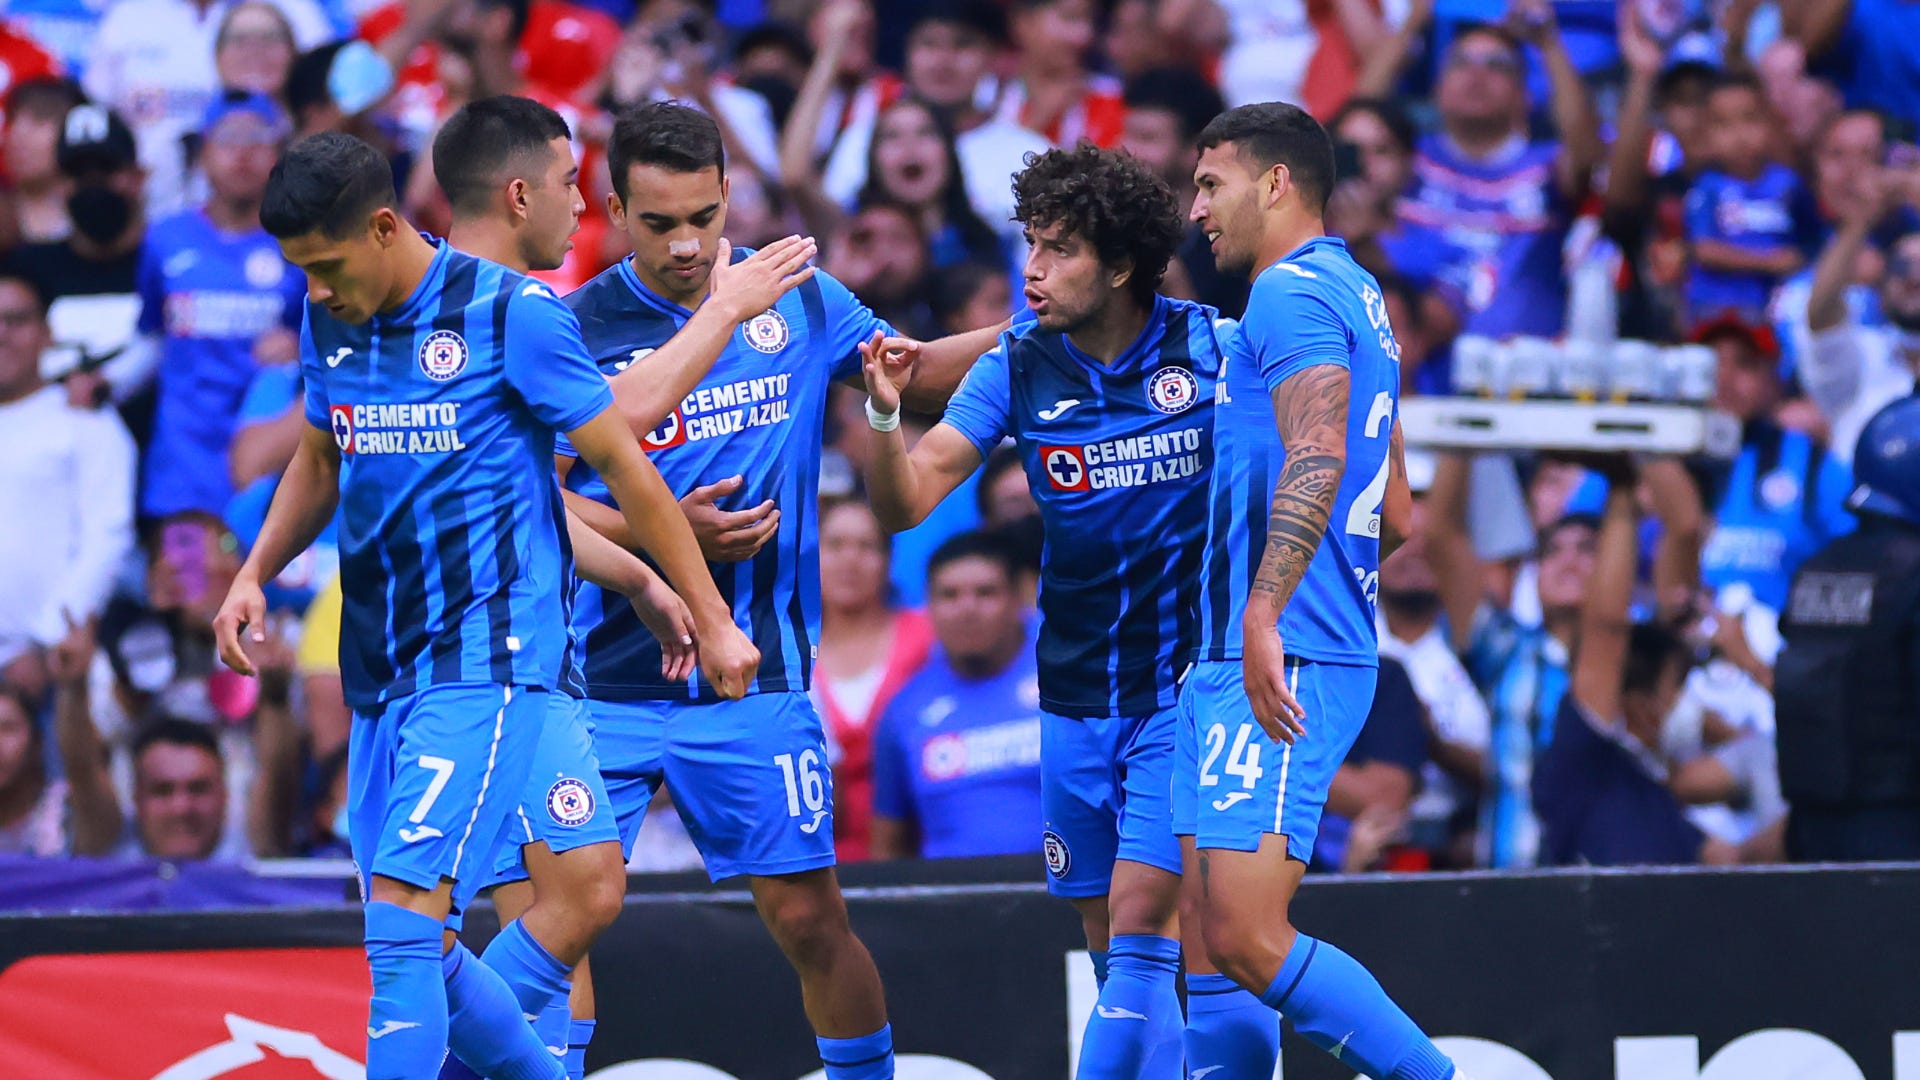 Repechaje Clausura 2022 | Cruz Azul vs Necaxa | La Máquina festeja gol de Escobar